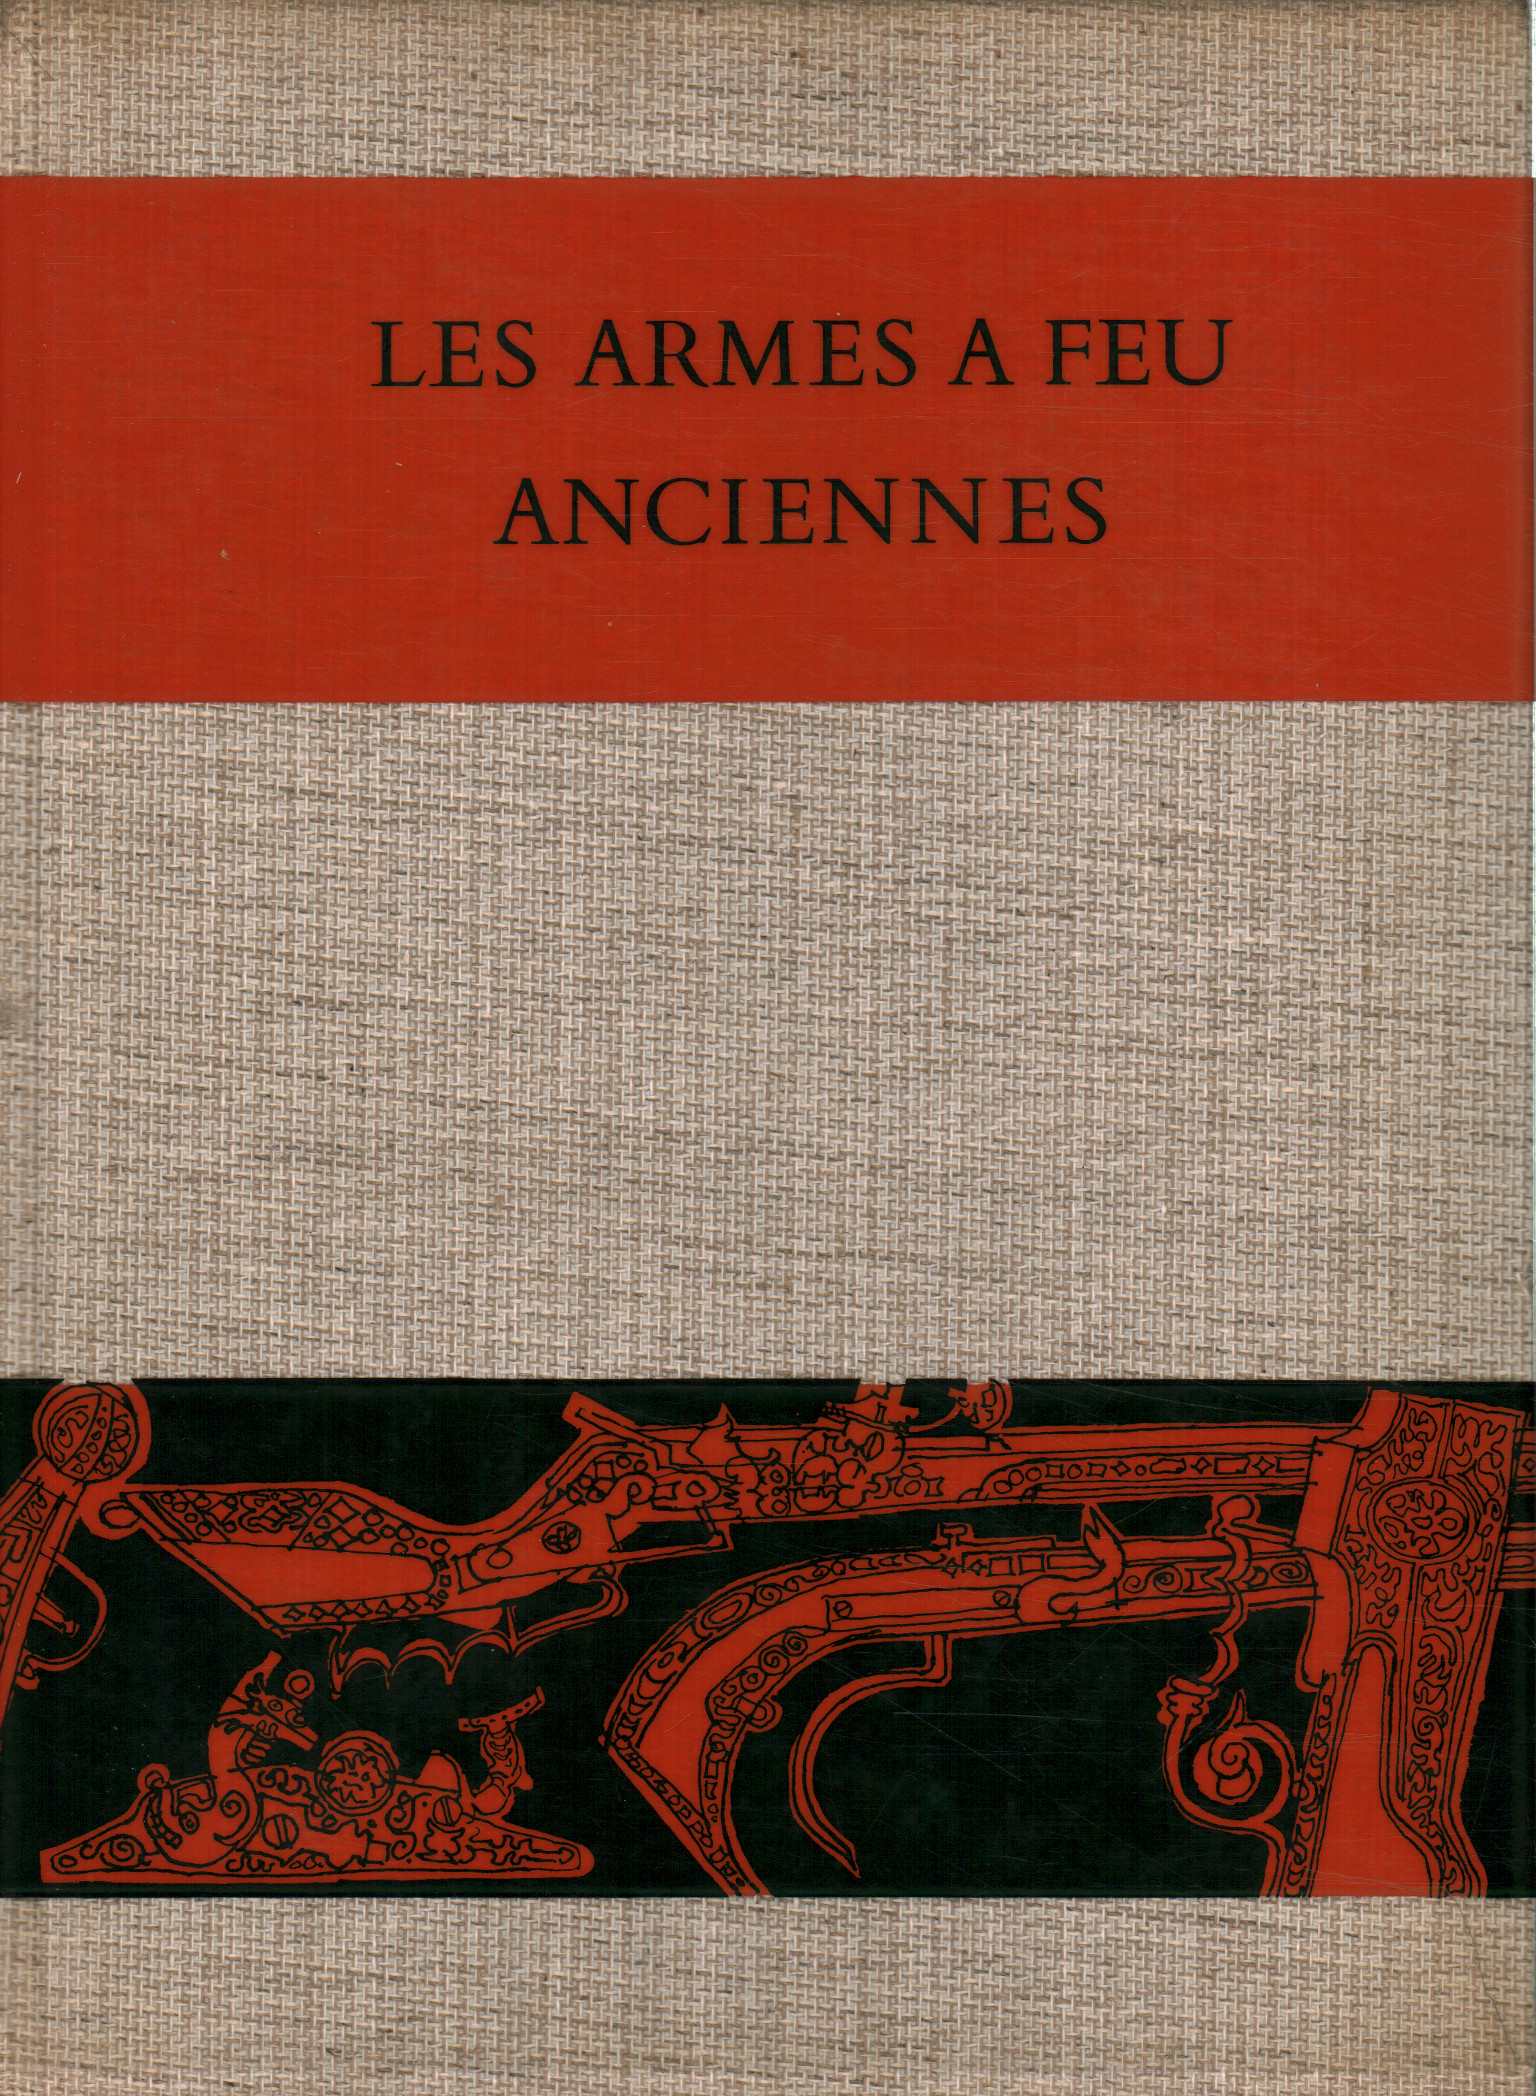 Les armes a feu anciennes 1500-1660